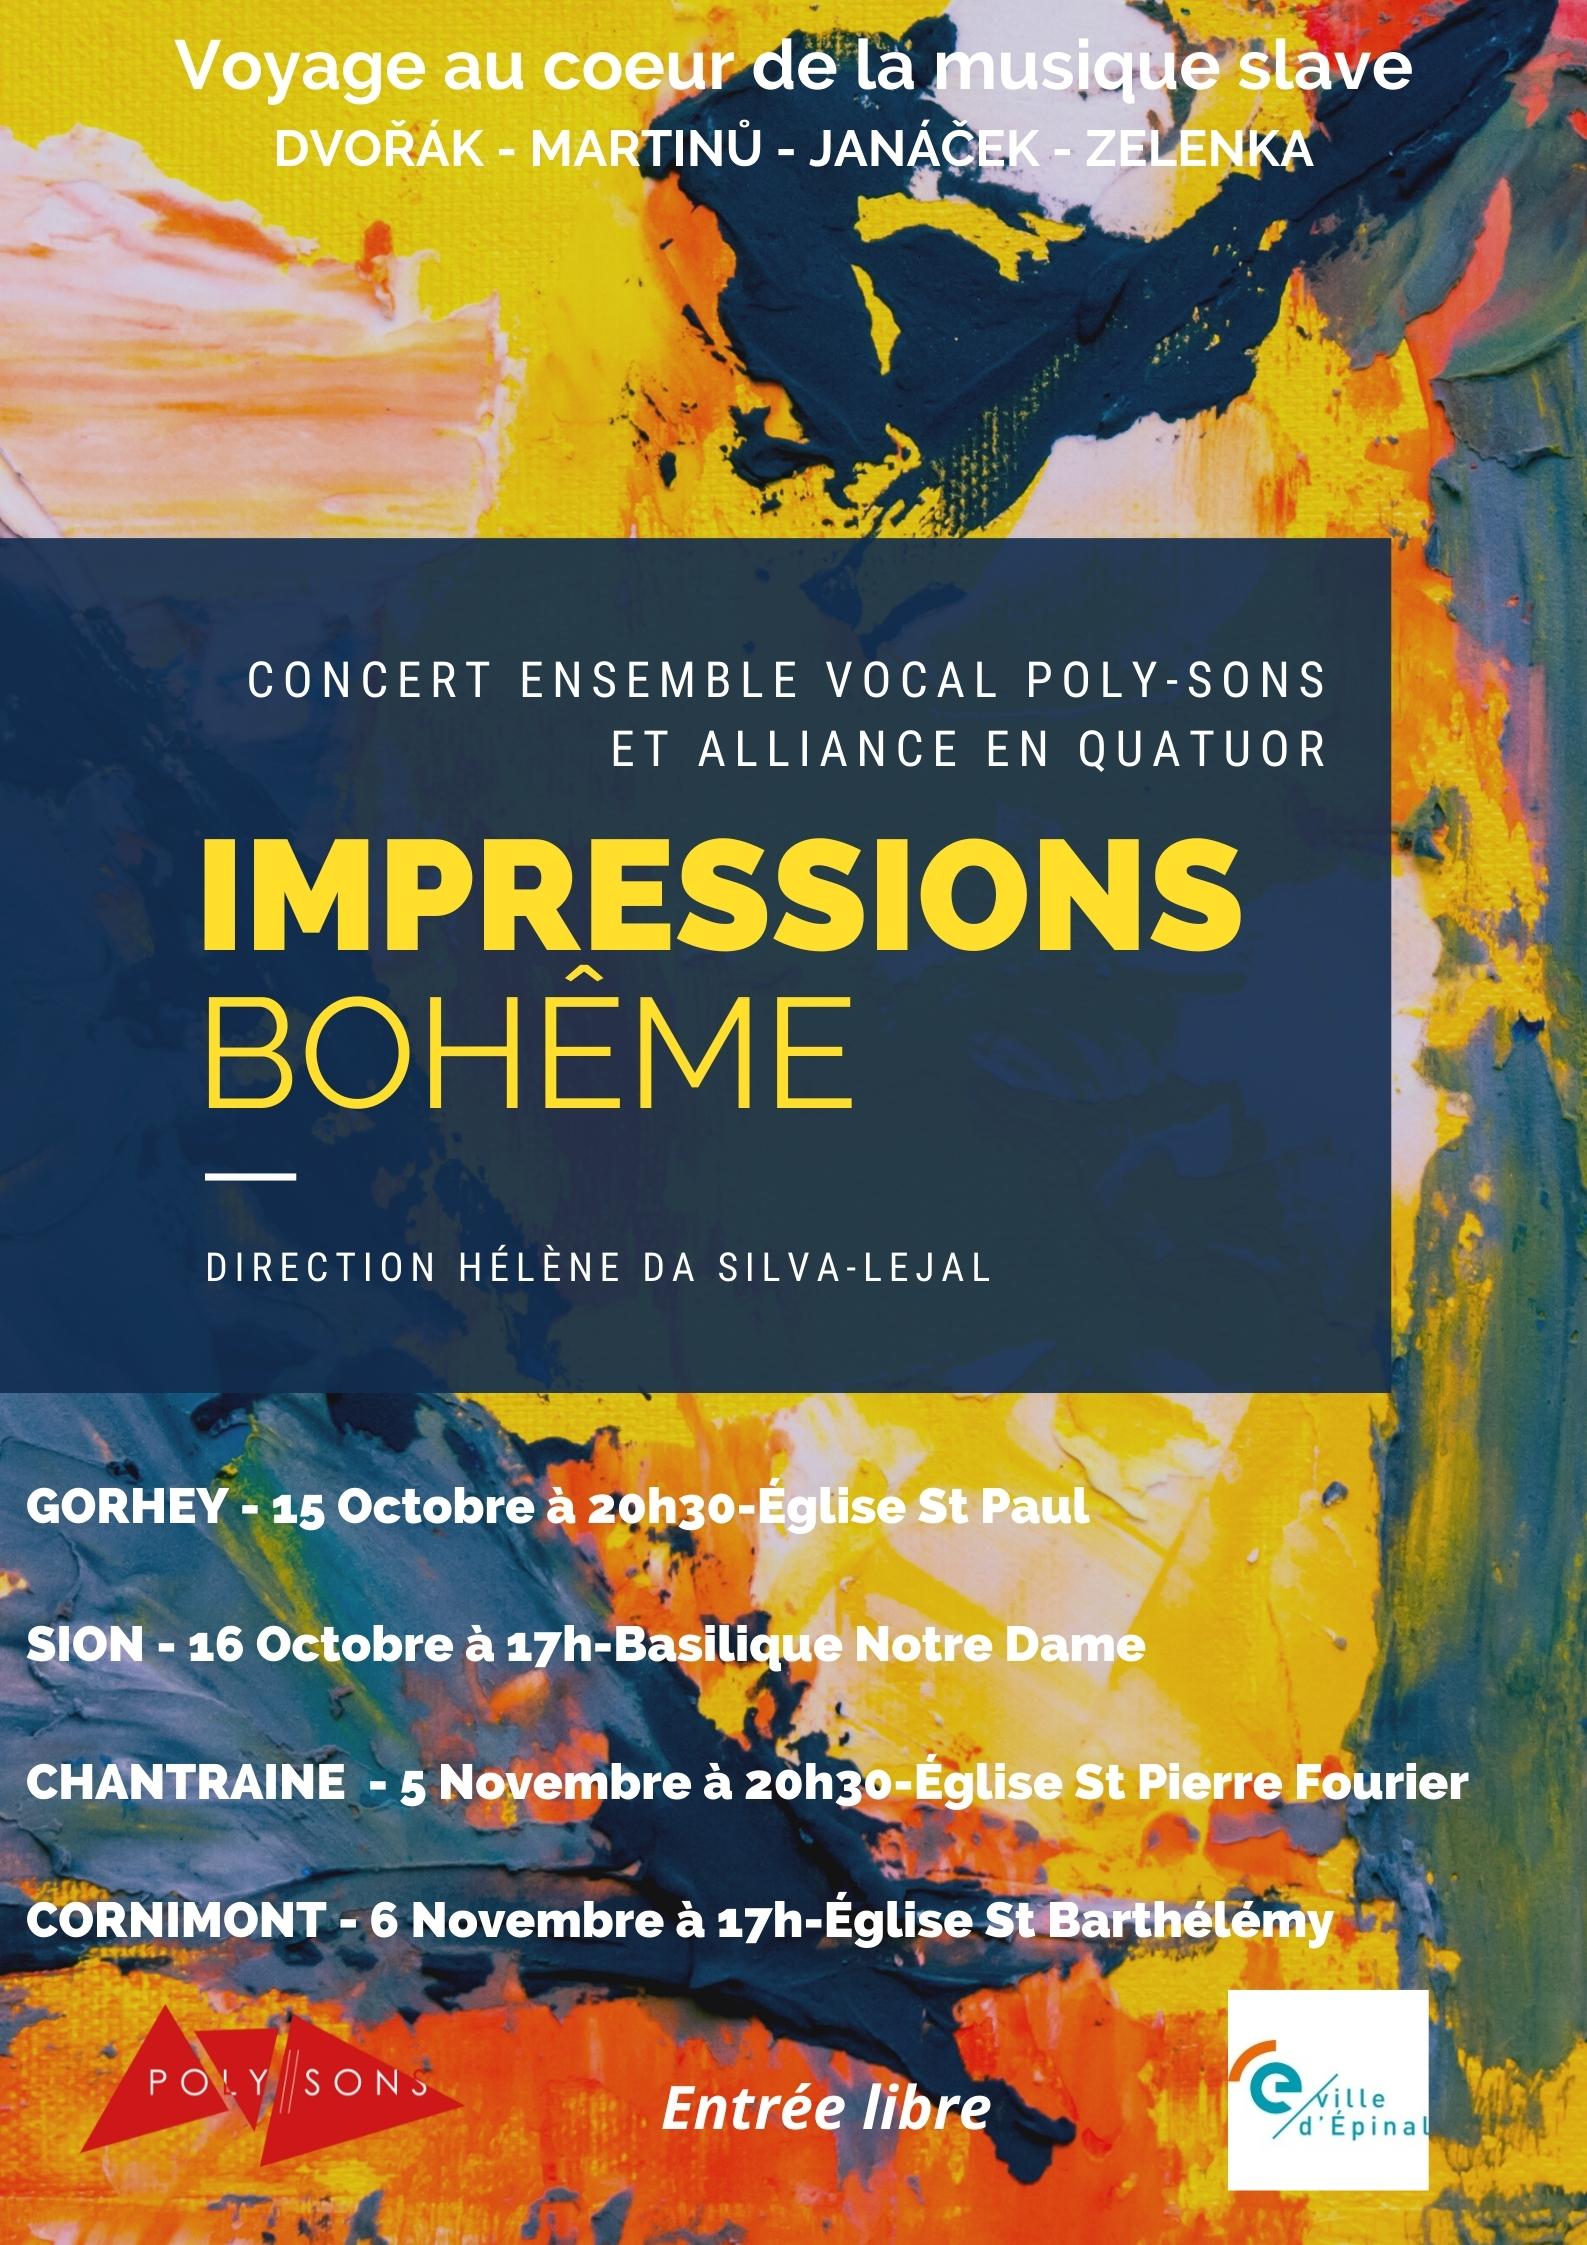 Concerts Ensemble Vocal Poly-sons